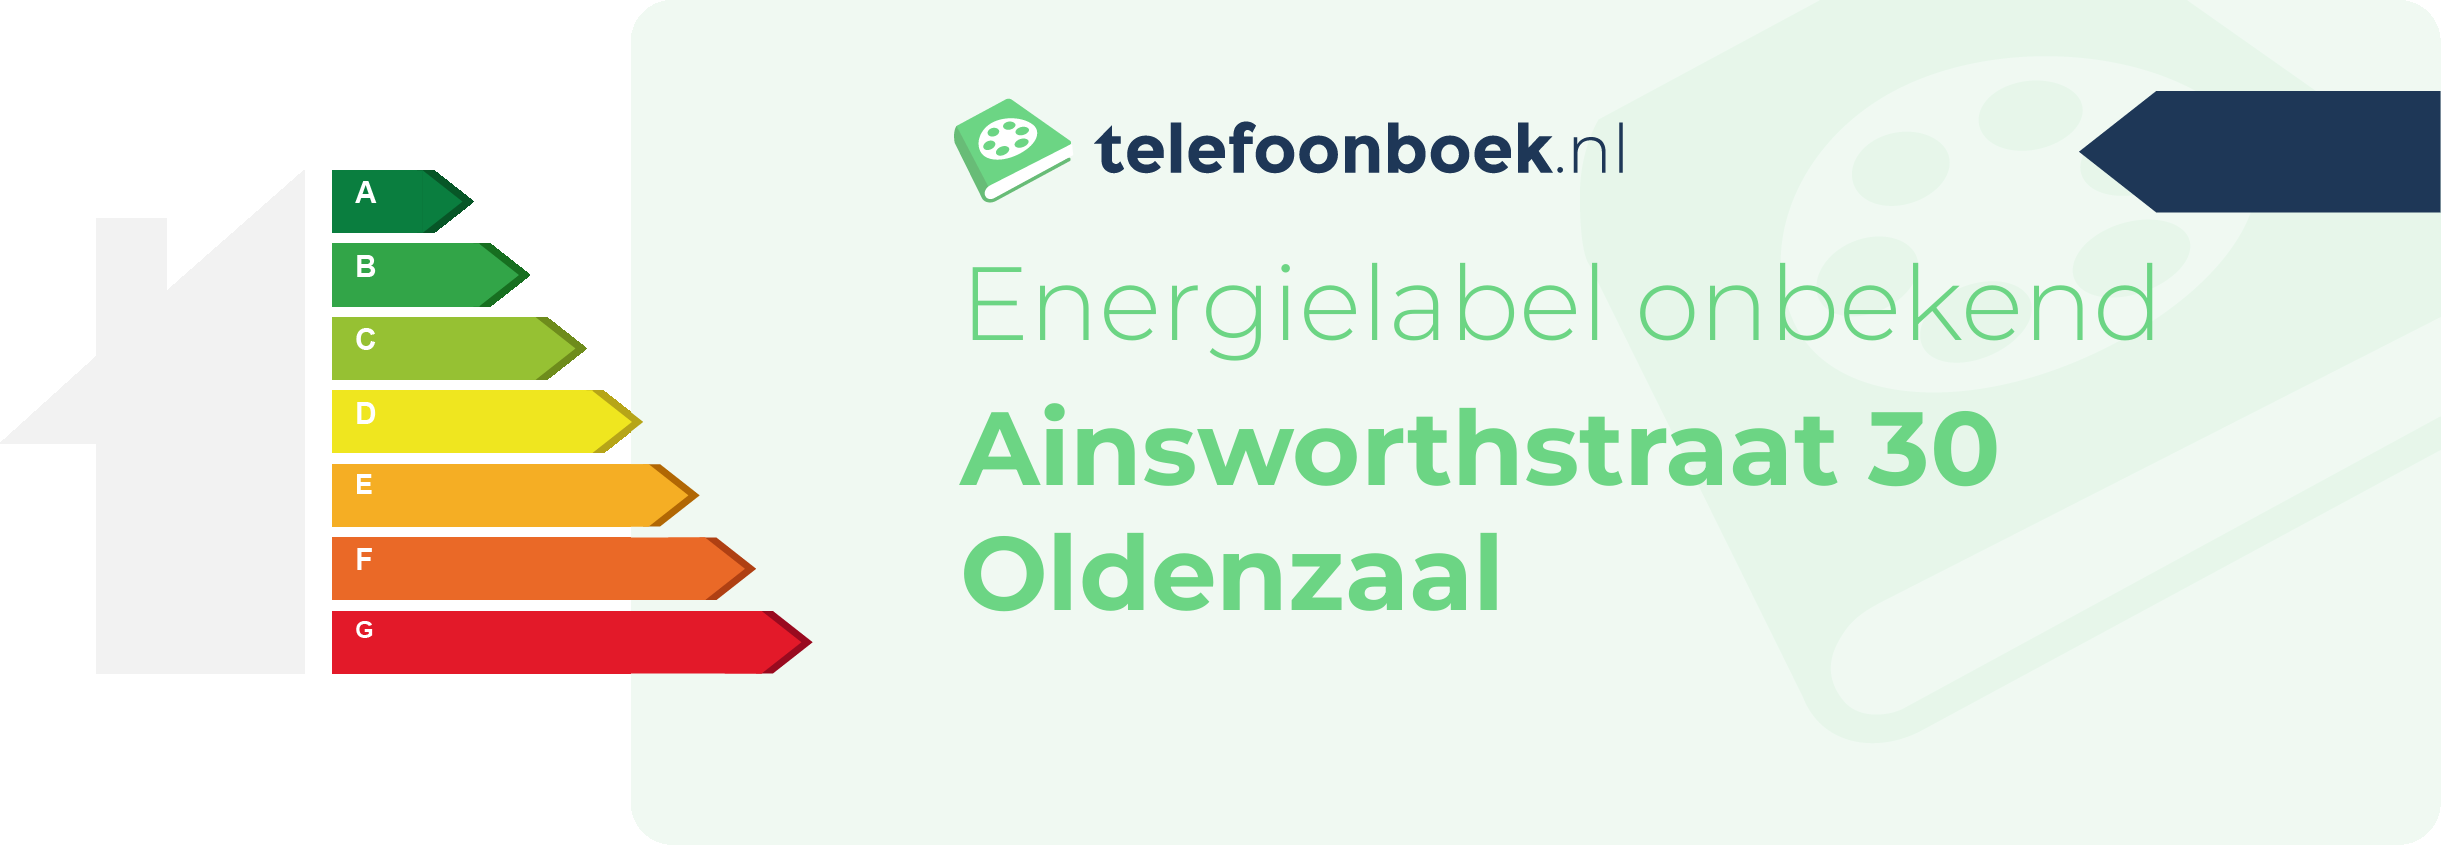 Energielabel Ainsworthstraat 30 Oldenzaal